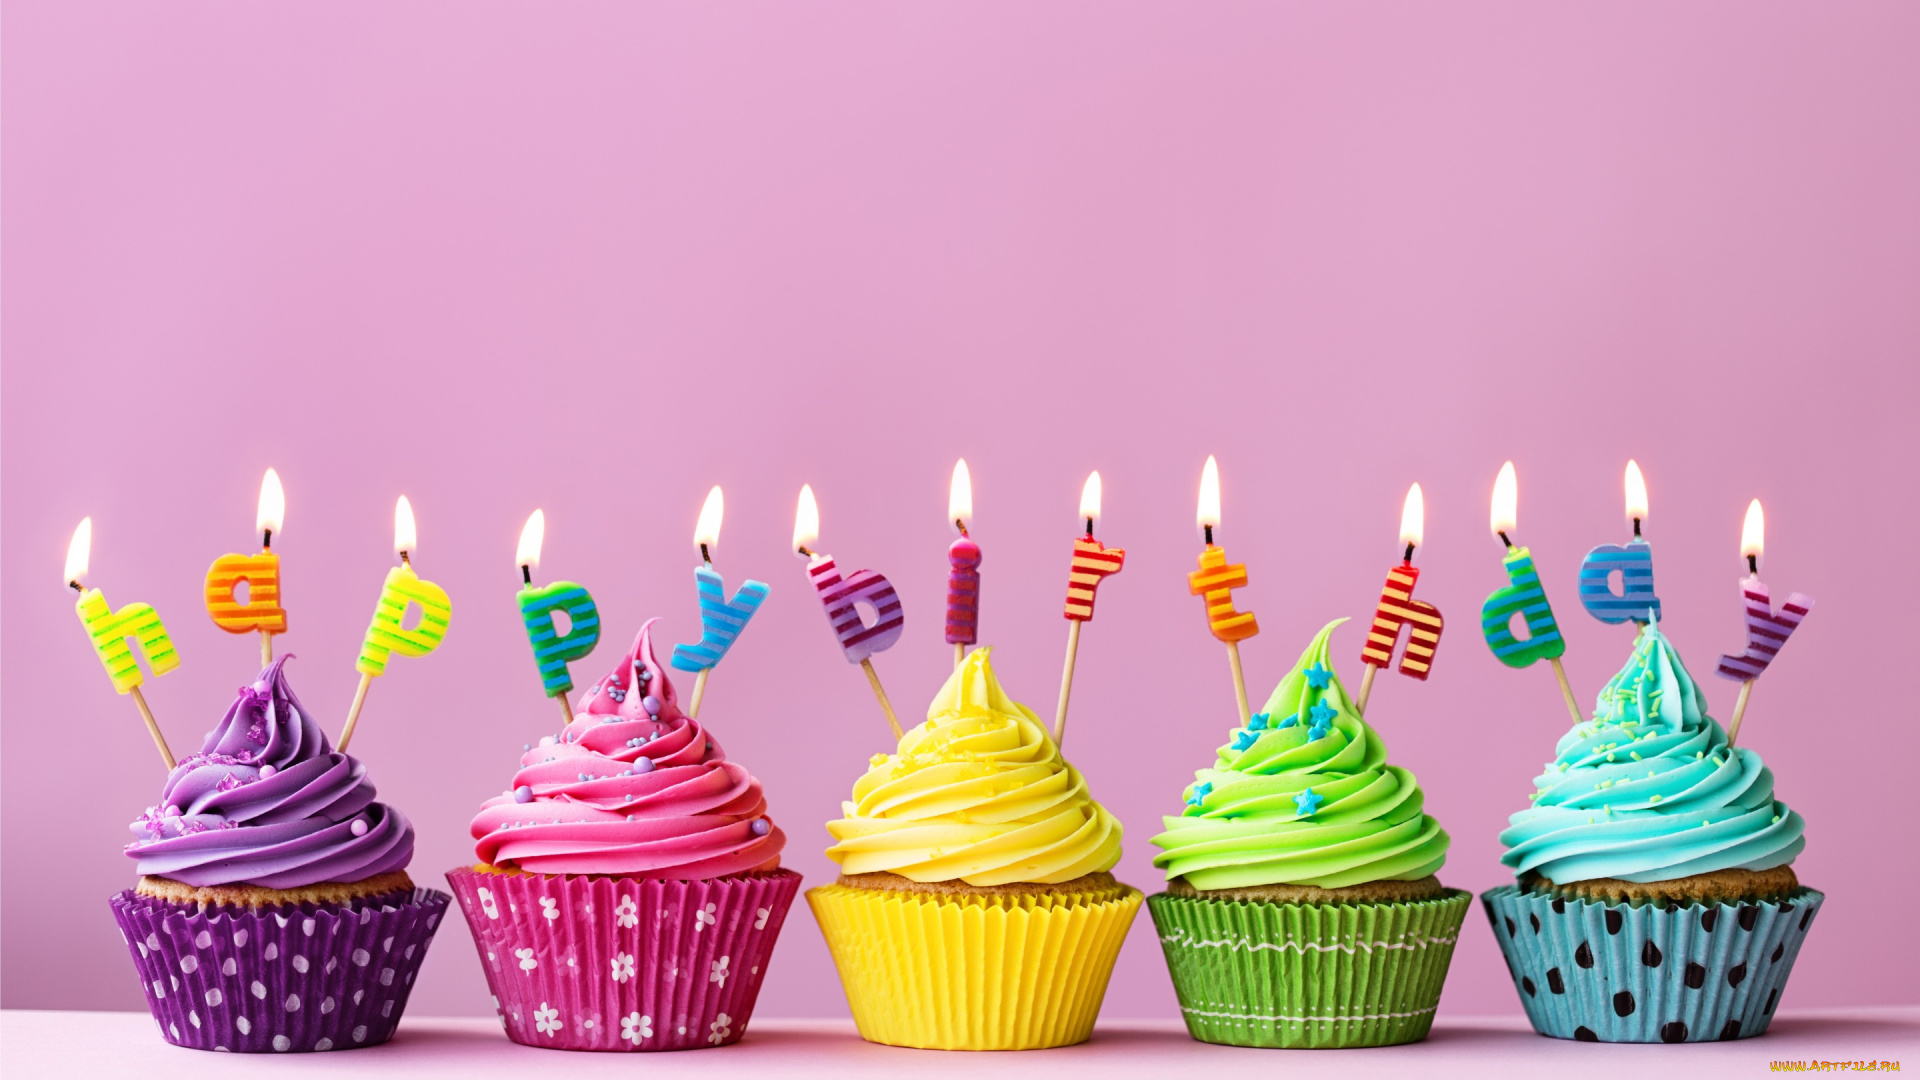 еда, пирожные, , кексы, , печенье, торт, свечи, день, рождения, candle, cake, cupcake, кекс, colorful, celebration, happy, birthday, decoration